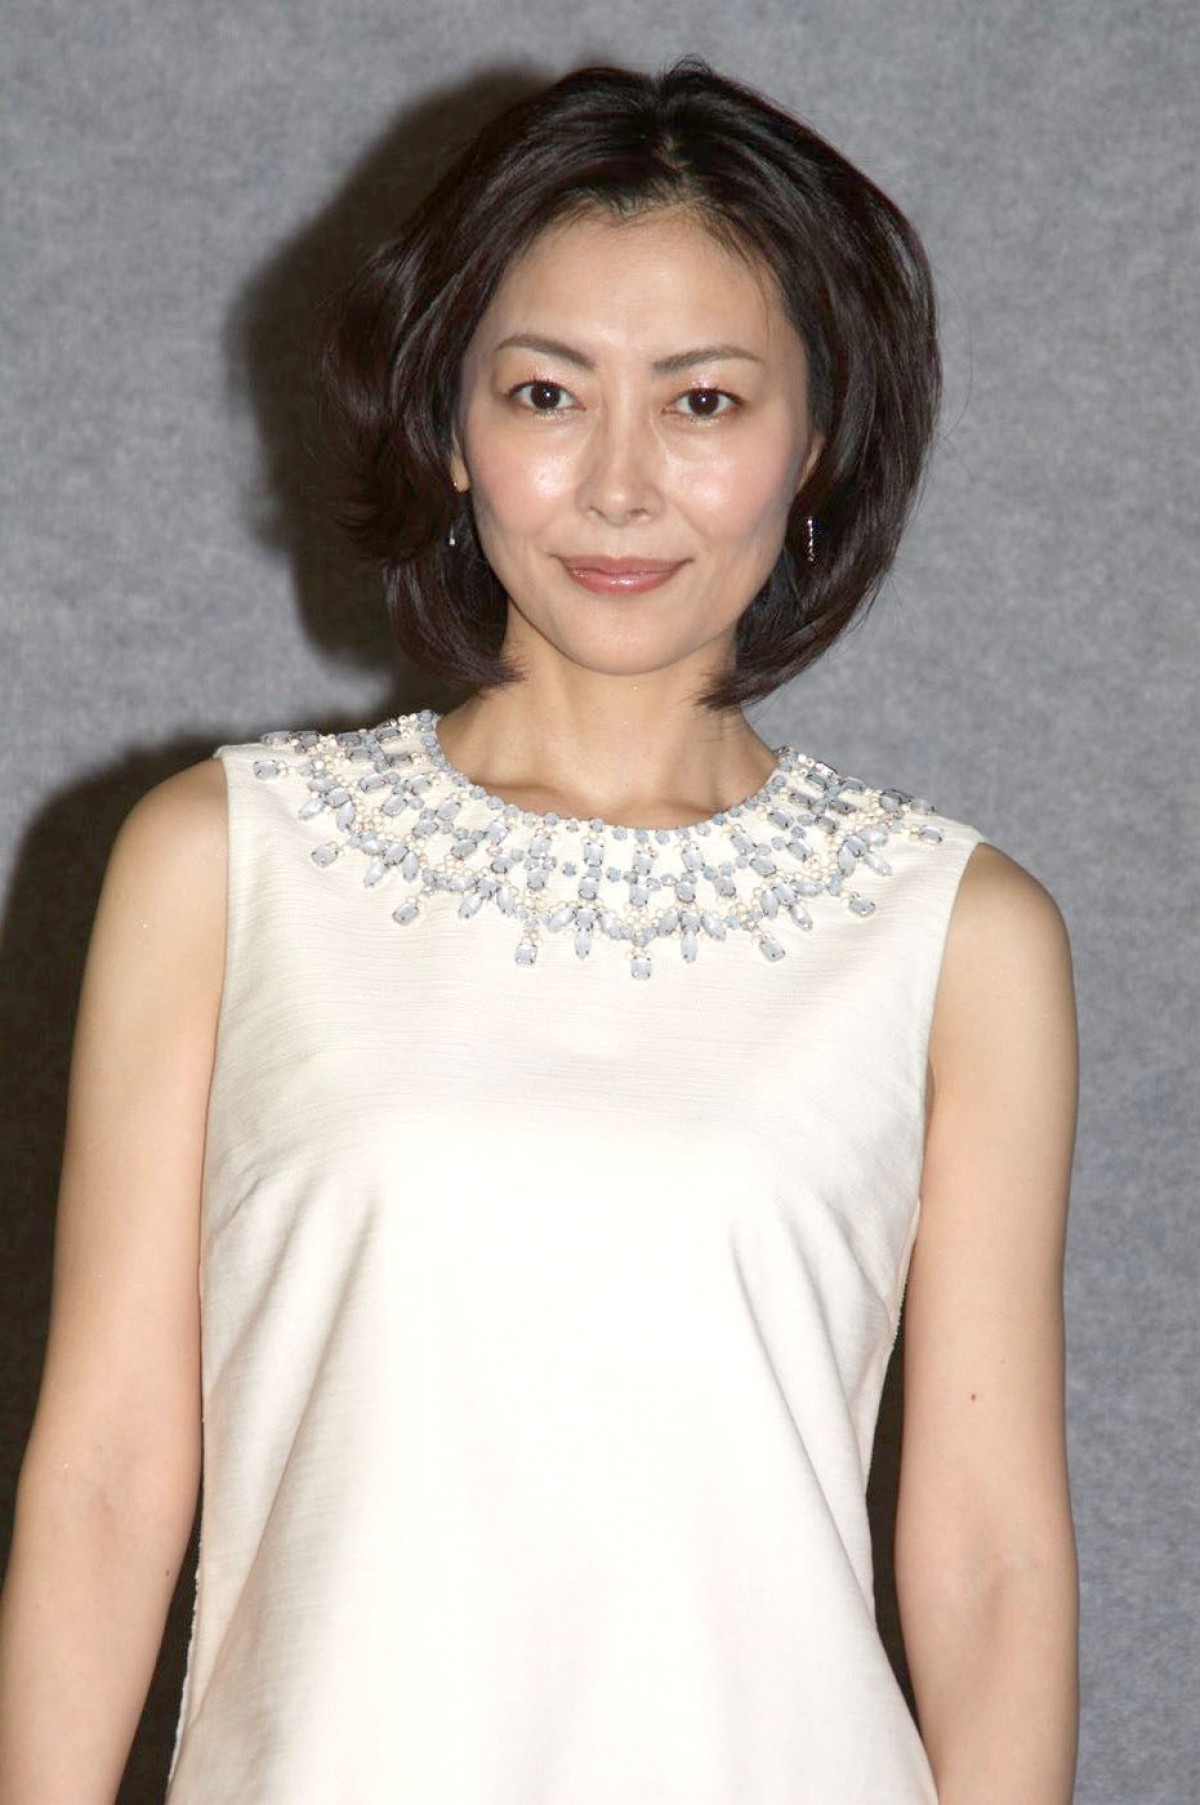 中山美穂は「No.1の女優」、堂本剛は「輝きを持っている」 野島伸司が絶賛